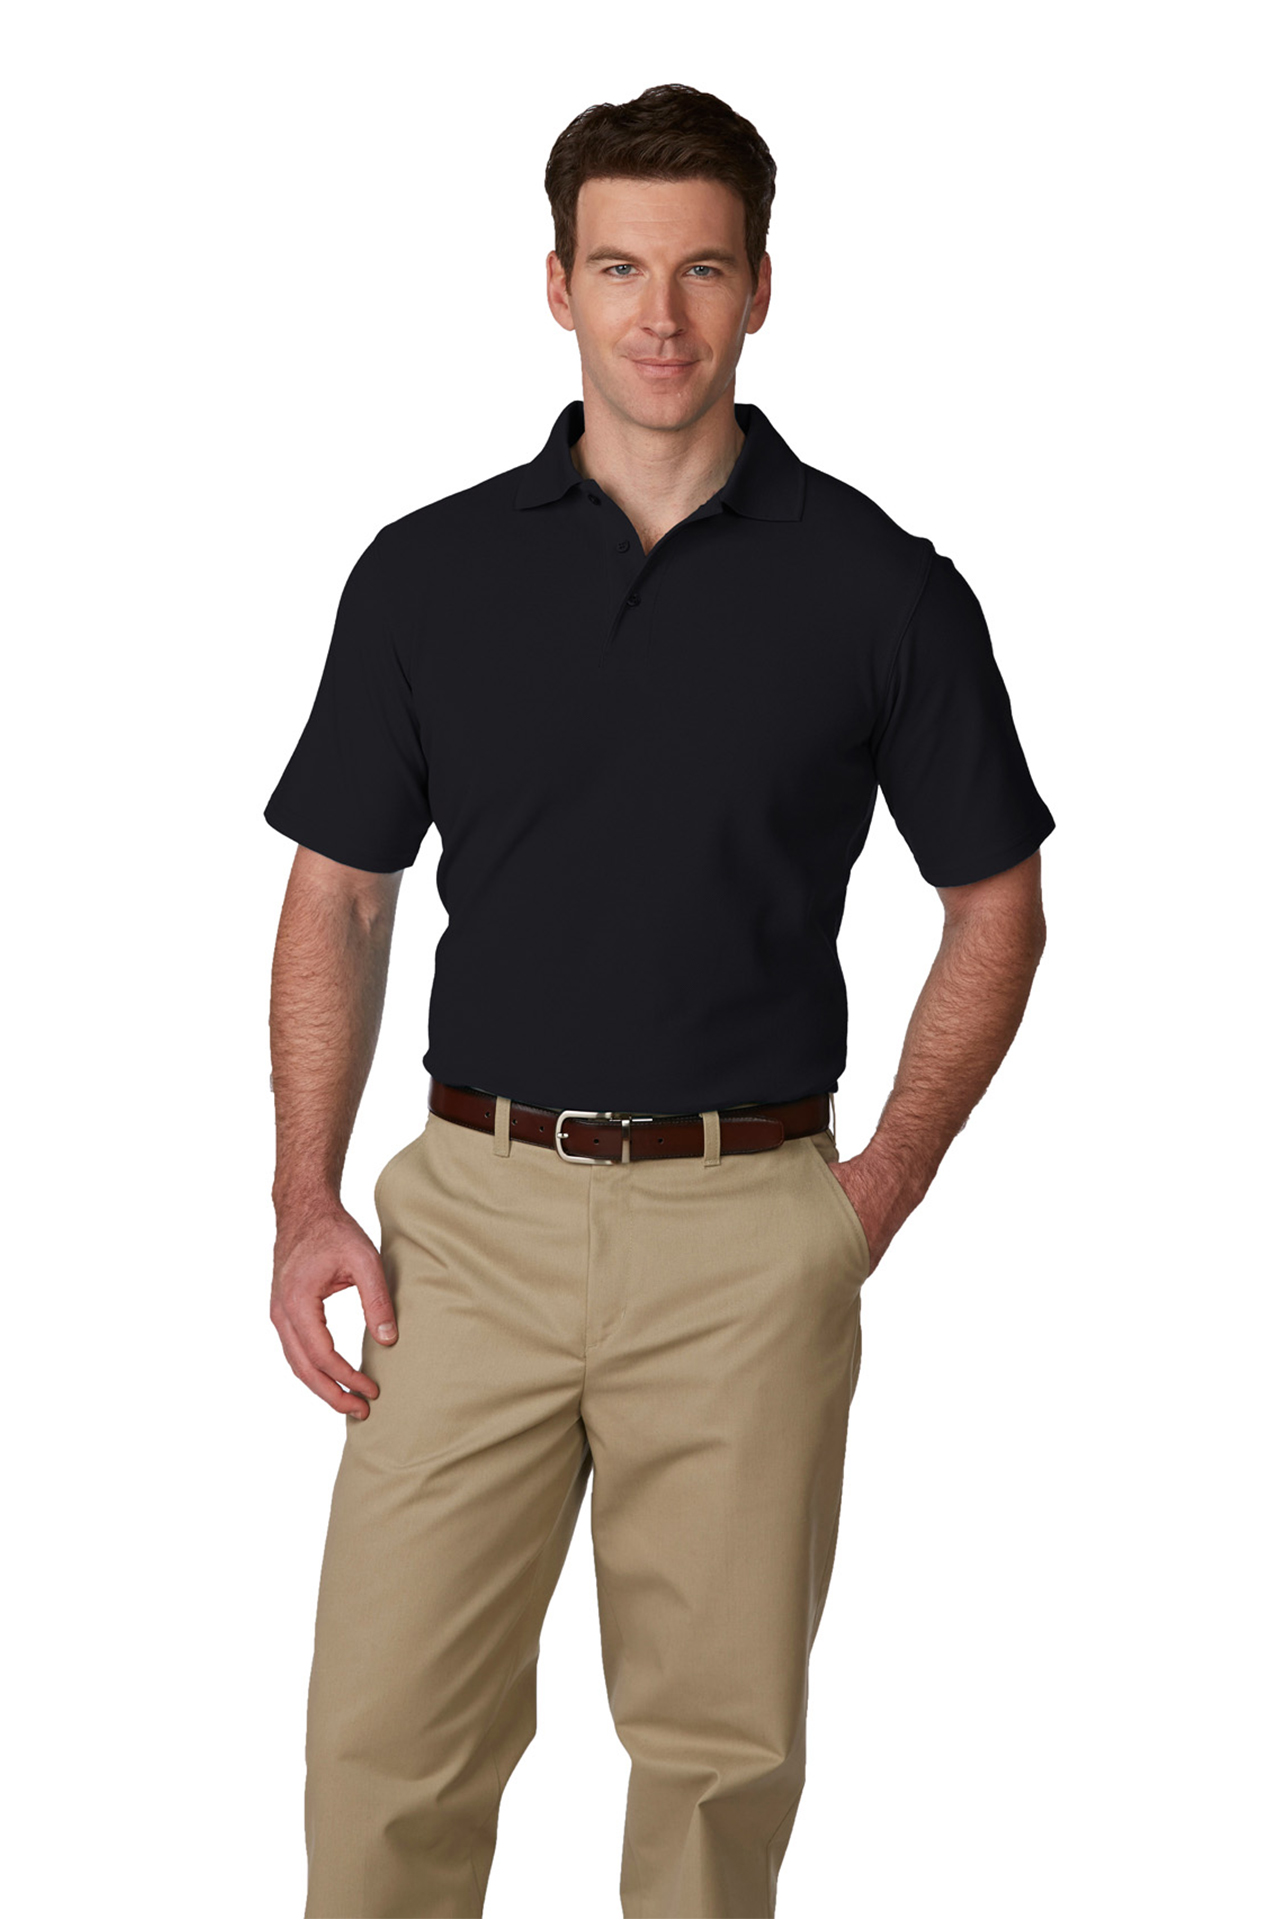 scherm Overweldigen voordeel Buy Mens/Unisex Pique Polo Shirt, Short Sleeves, Hemmed - A Plus Online at  Best price - UT